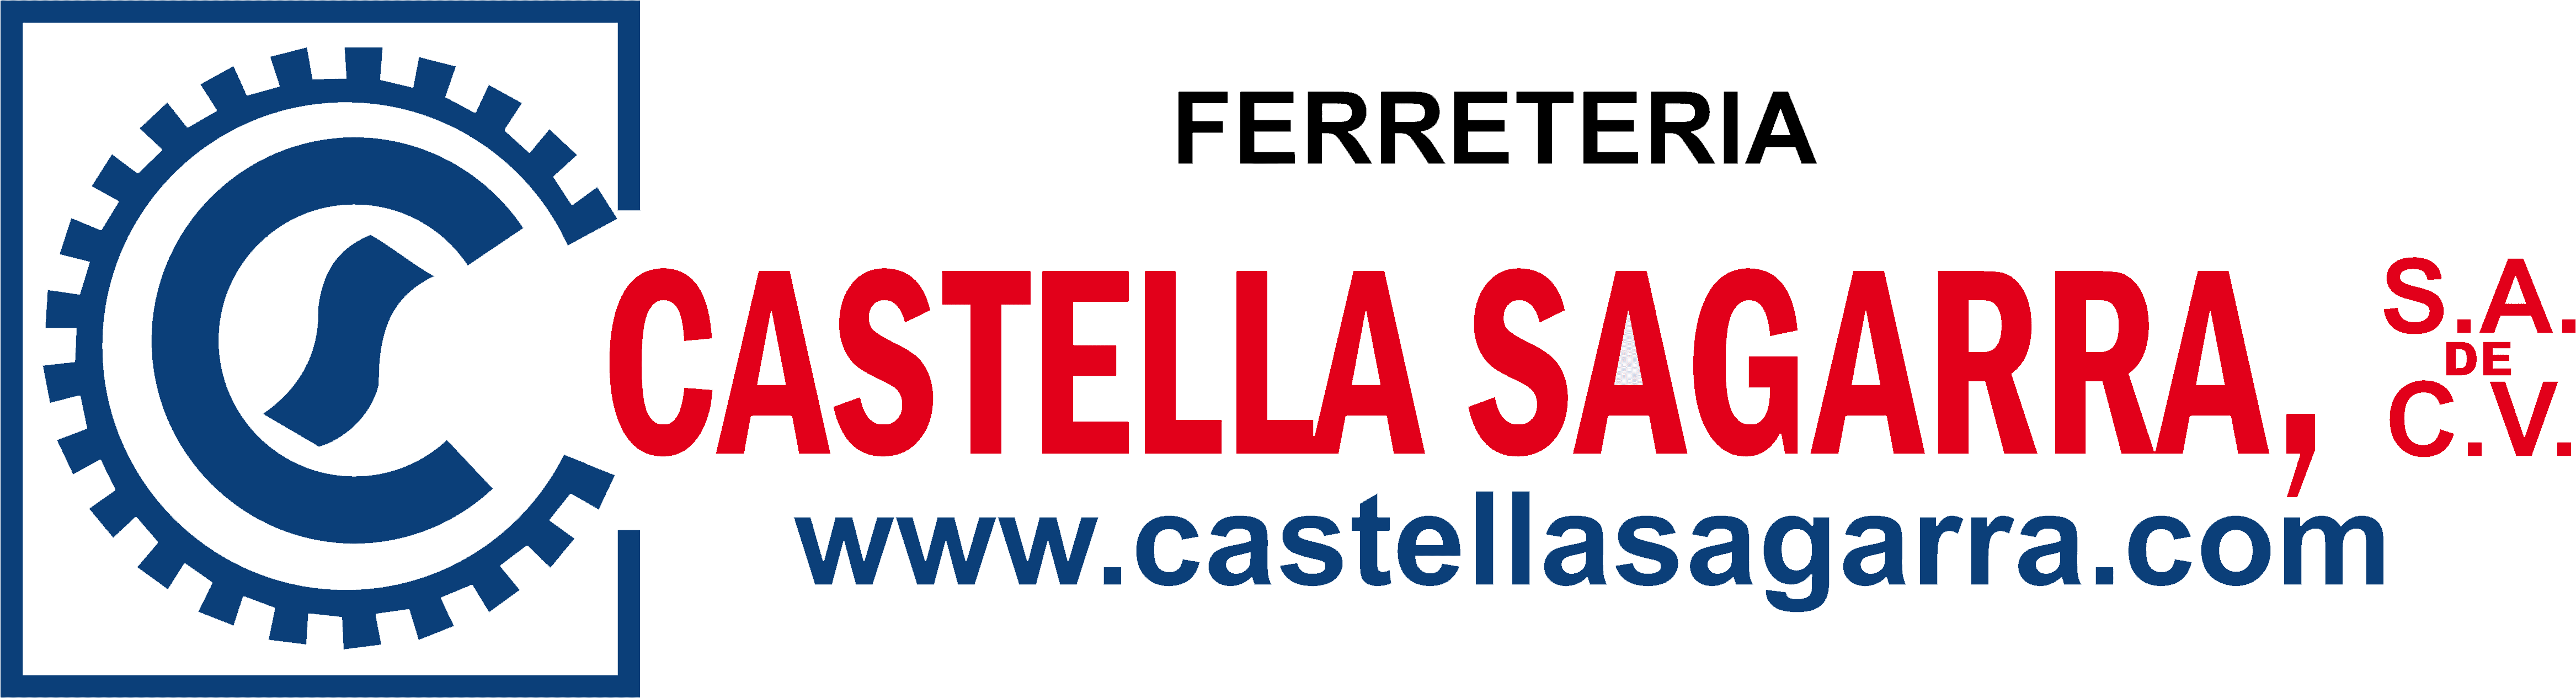 Ferretería Castella Sagarra